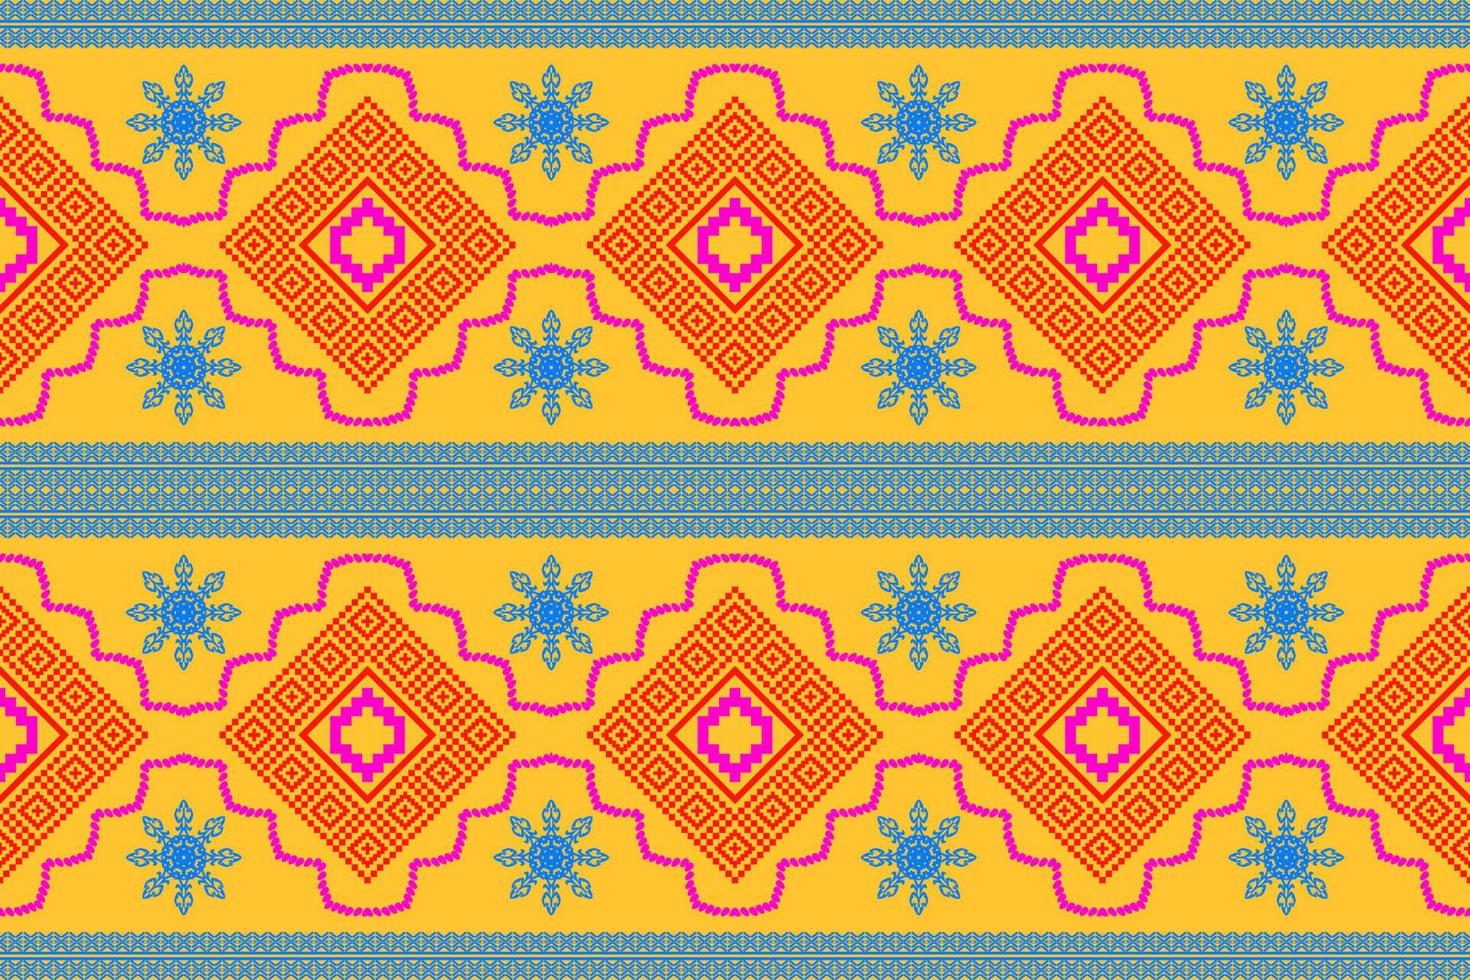 geometrische etnische oosterse traditionele pattern.figure tribal borduurwerk style.design voor achtergrond, behang, kleding, verpakking, stof, vectorillustratie vector